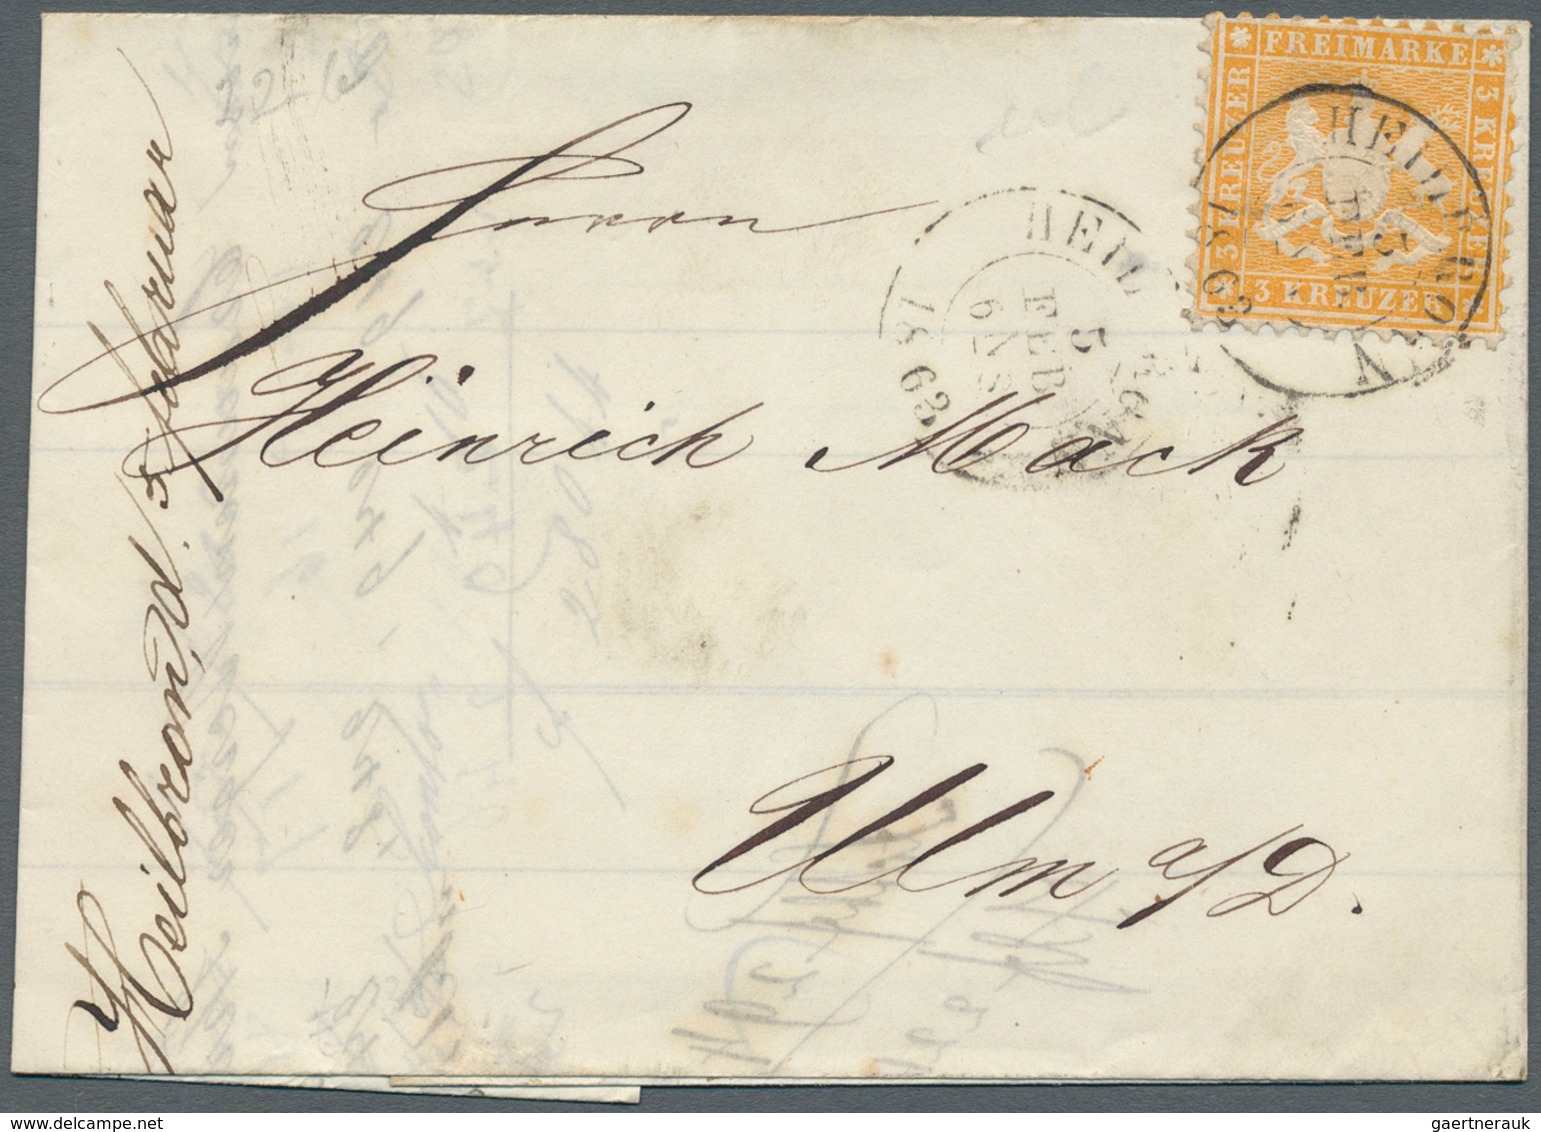 31348 Württemberg - Marken und Briefe: 1853/1920, Partie von ca. 120 Briefen, Karten und Ganzsachen, zusät